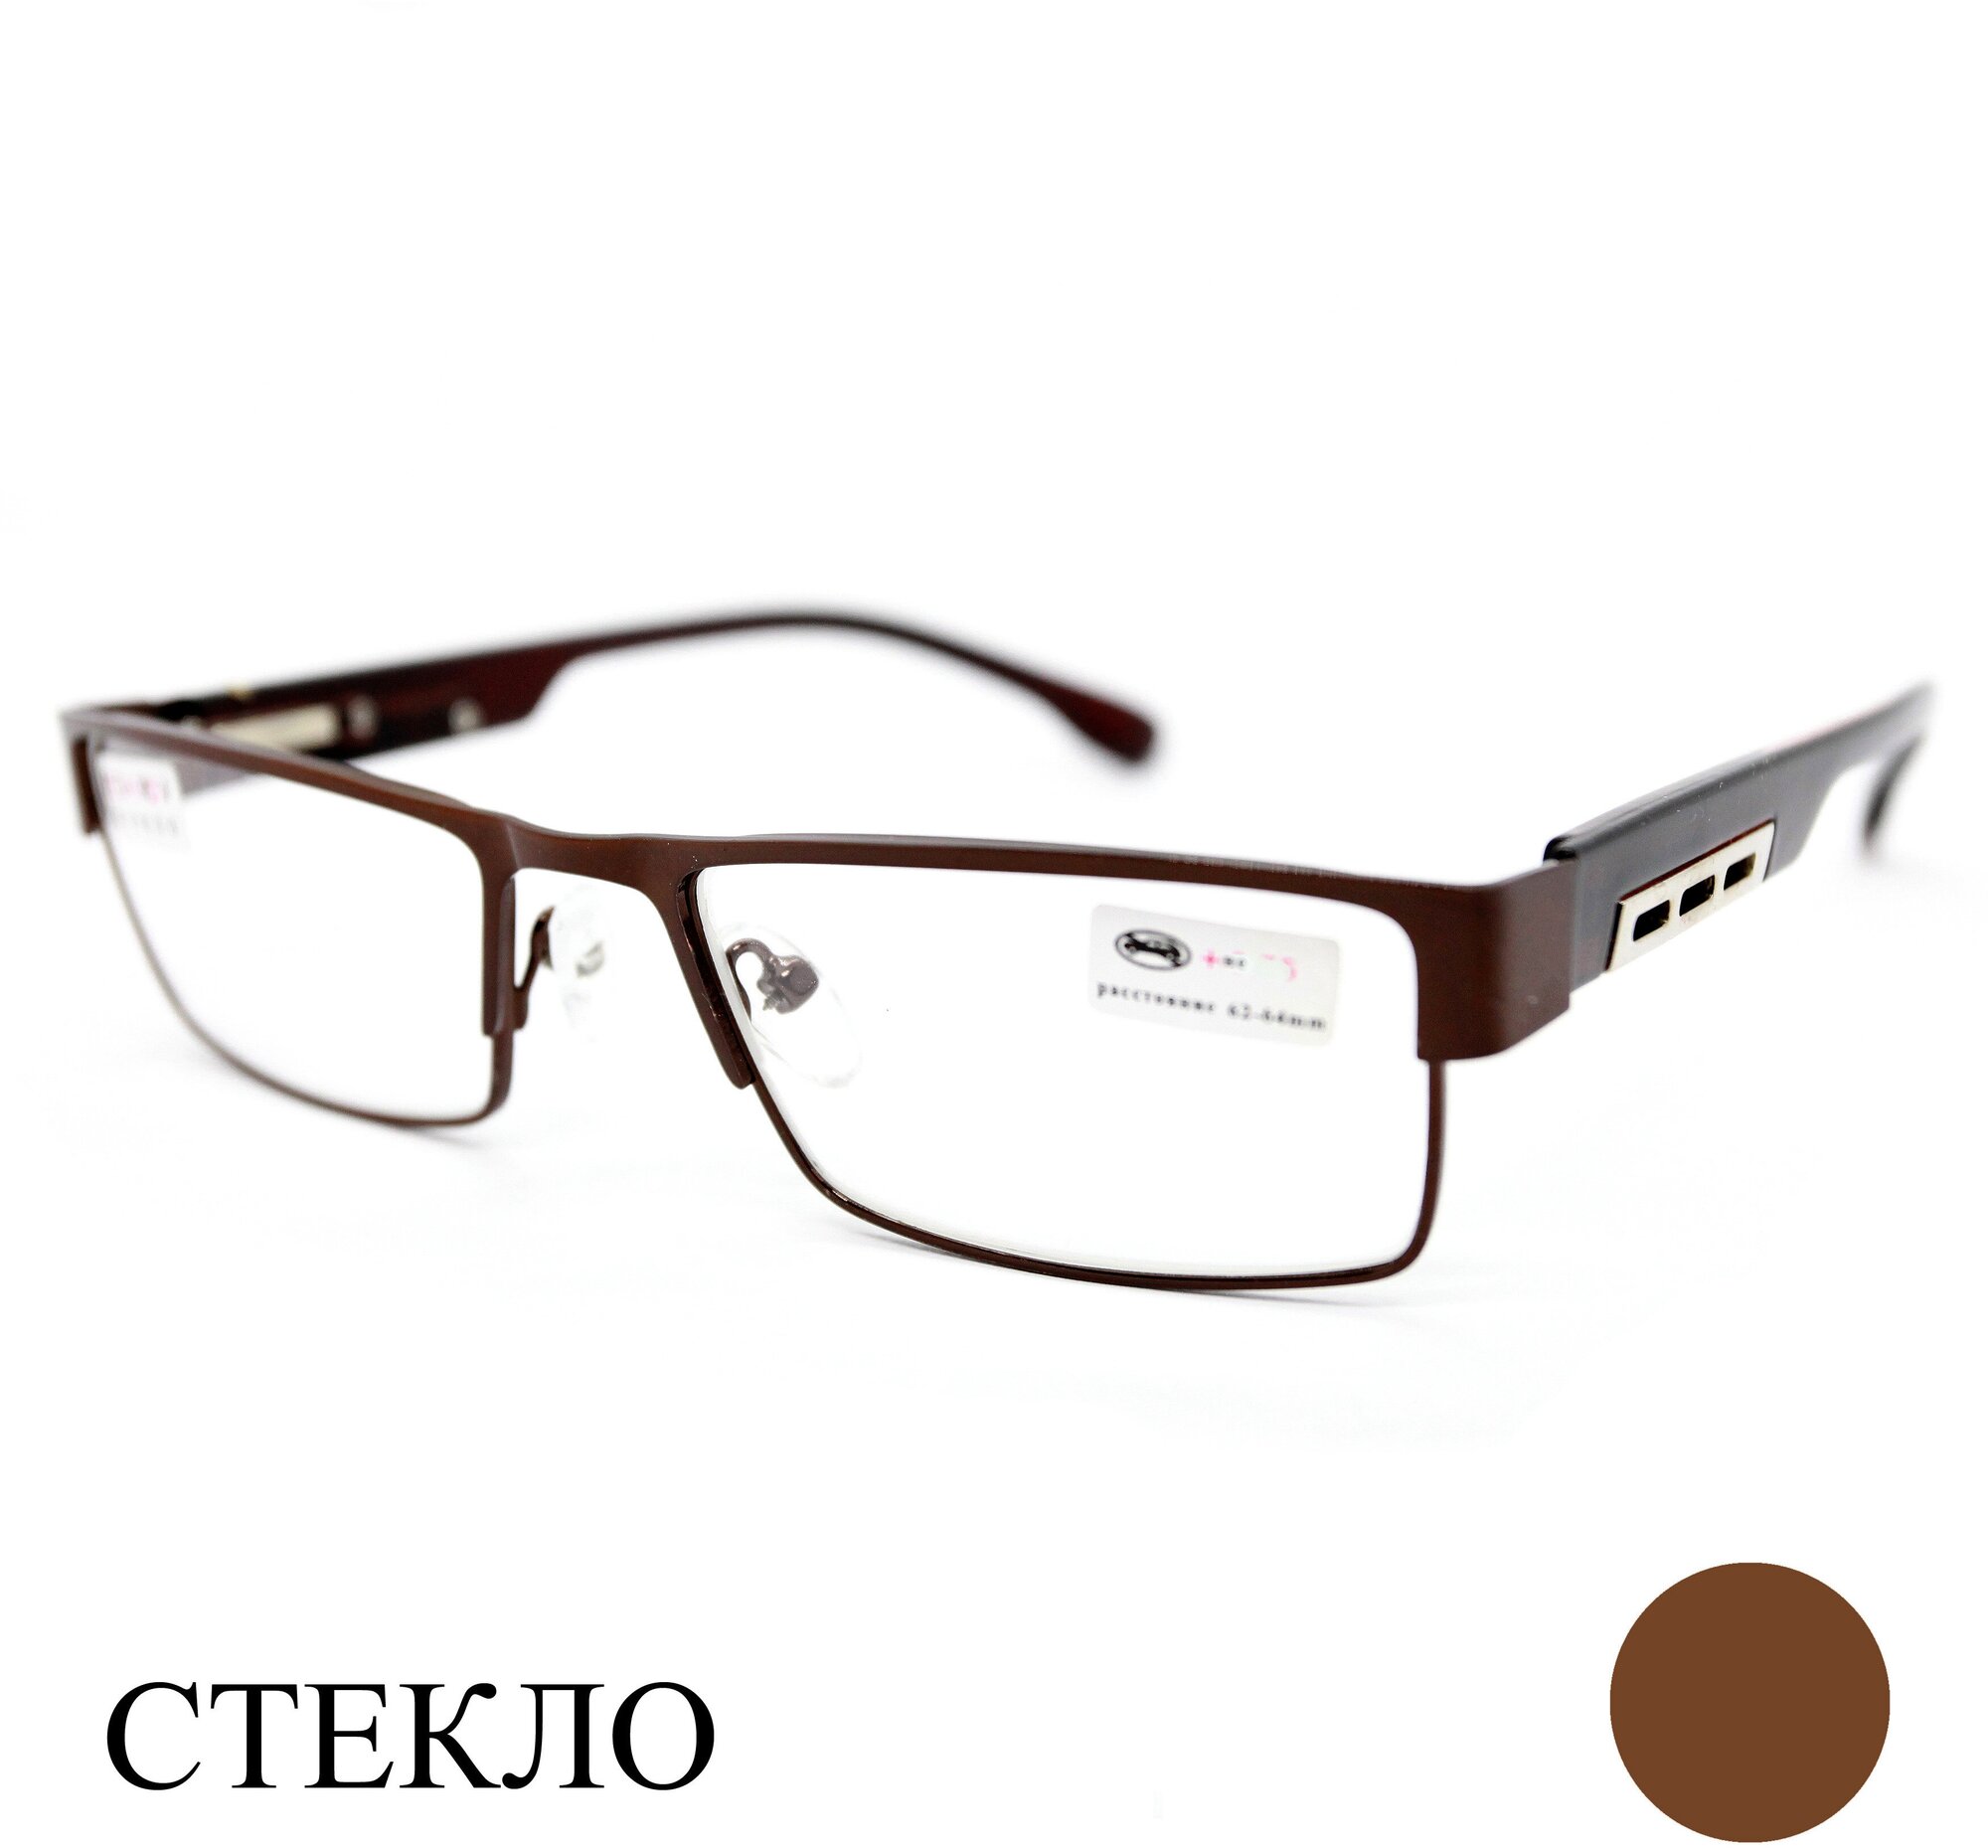 Готовые очки мужские со стеклом (+4.00) Fedrov 019 M1, линза стекло, цвет коричневый, РЦ 62-64